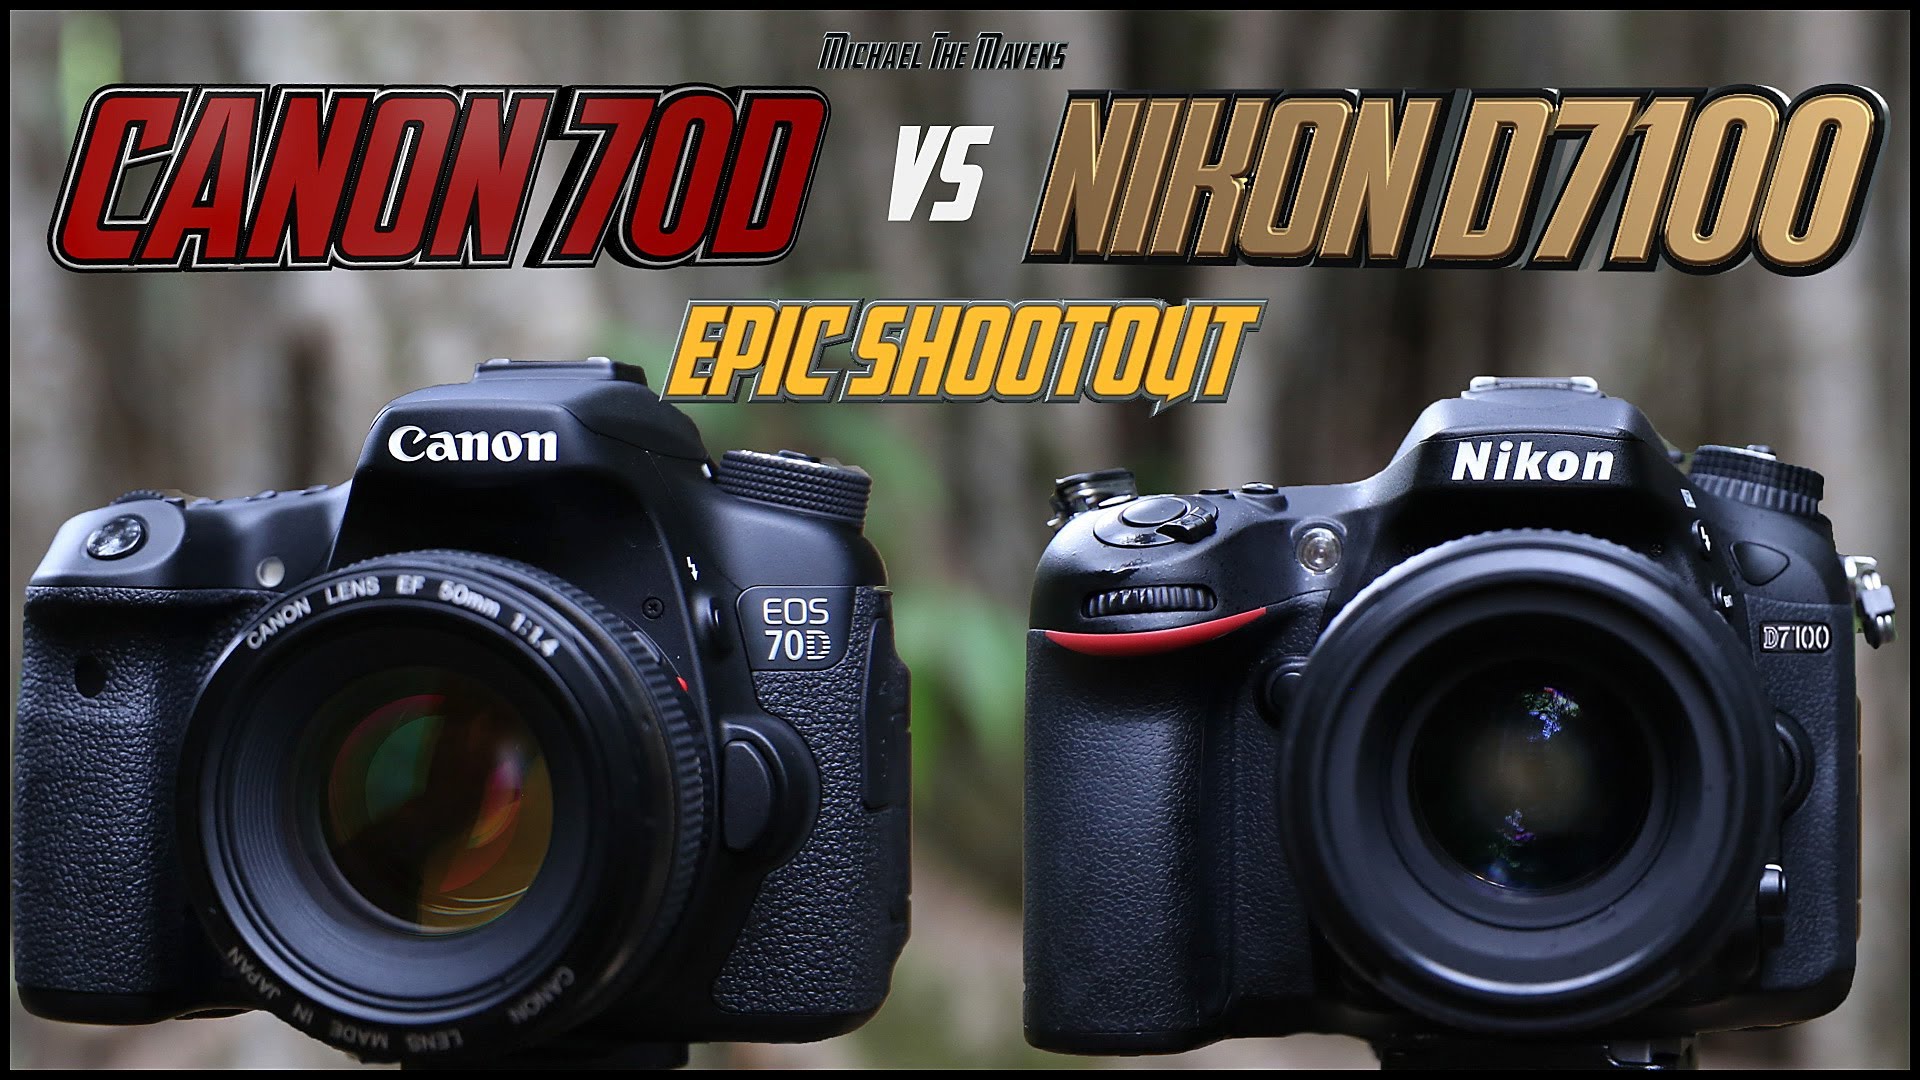 Canon 70D vs Nikon D7100 Epic Shootout Comparison | Which camera to buy?